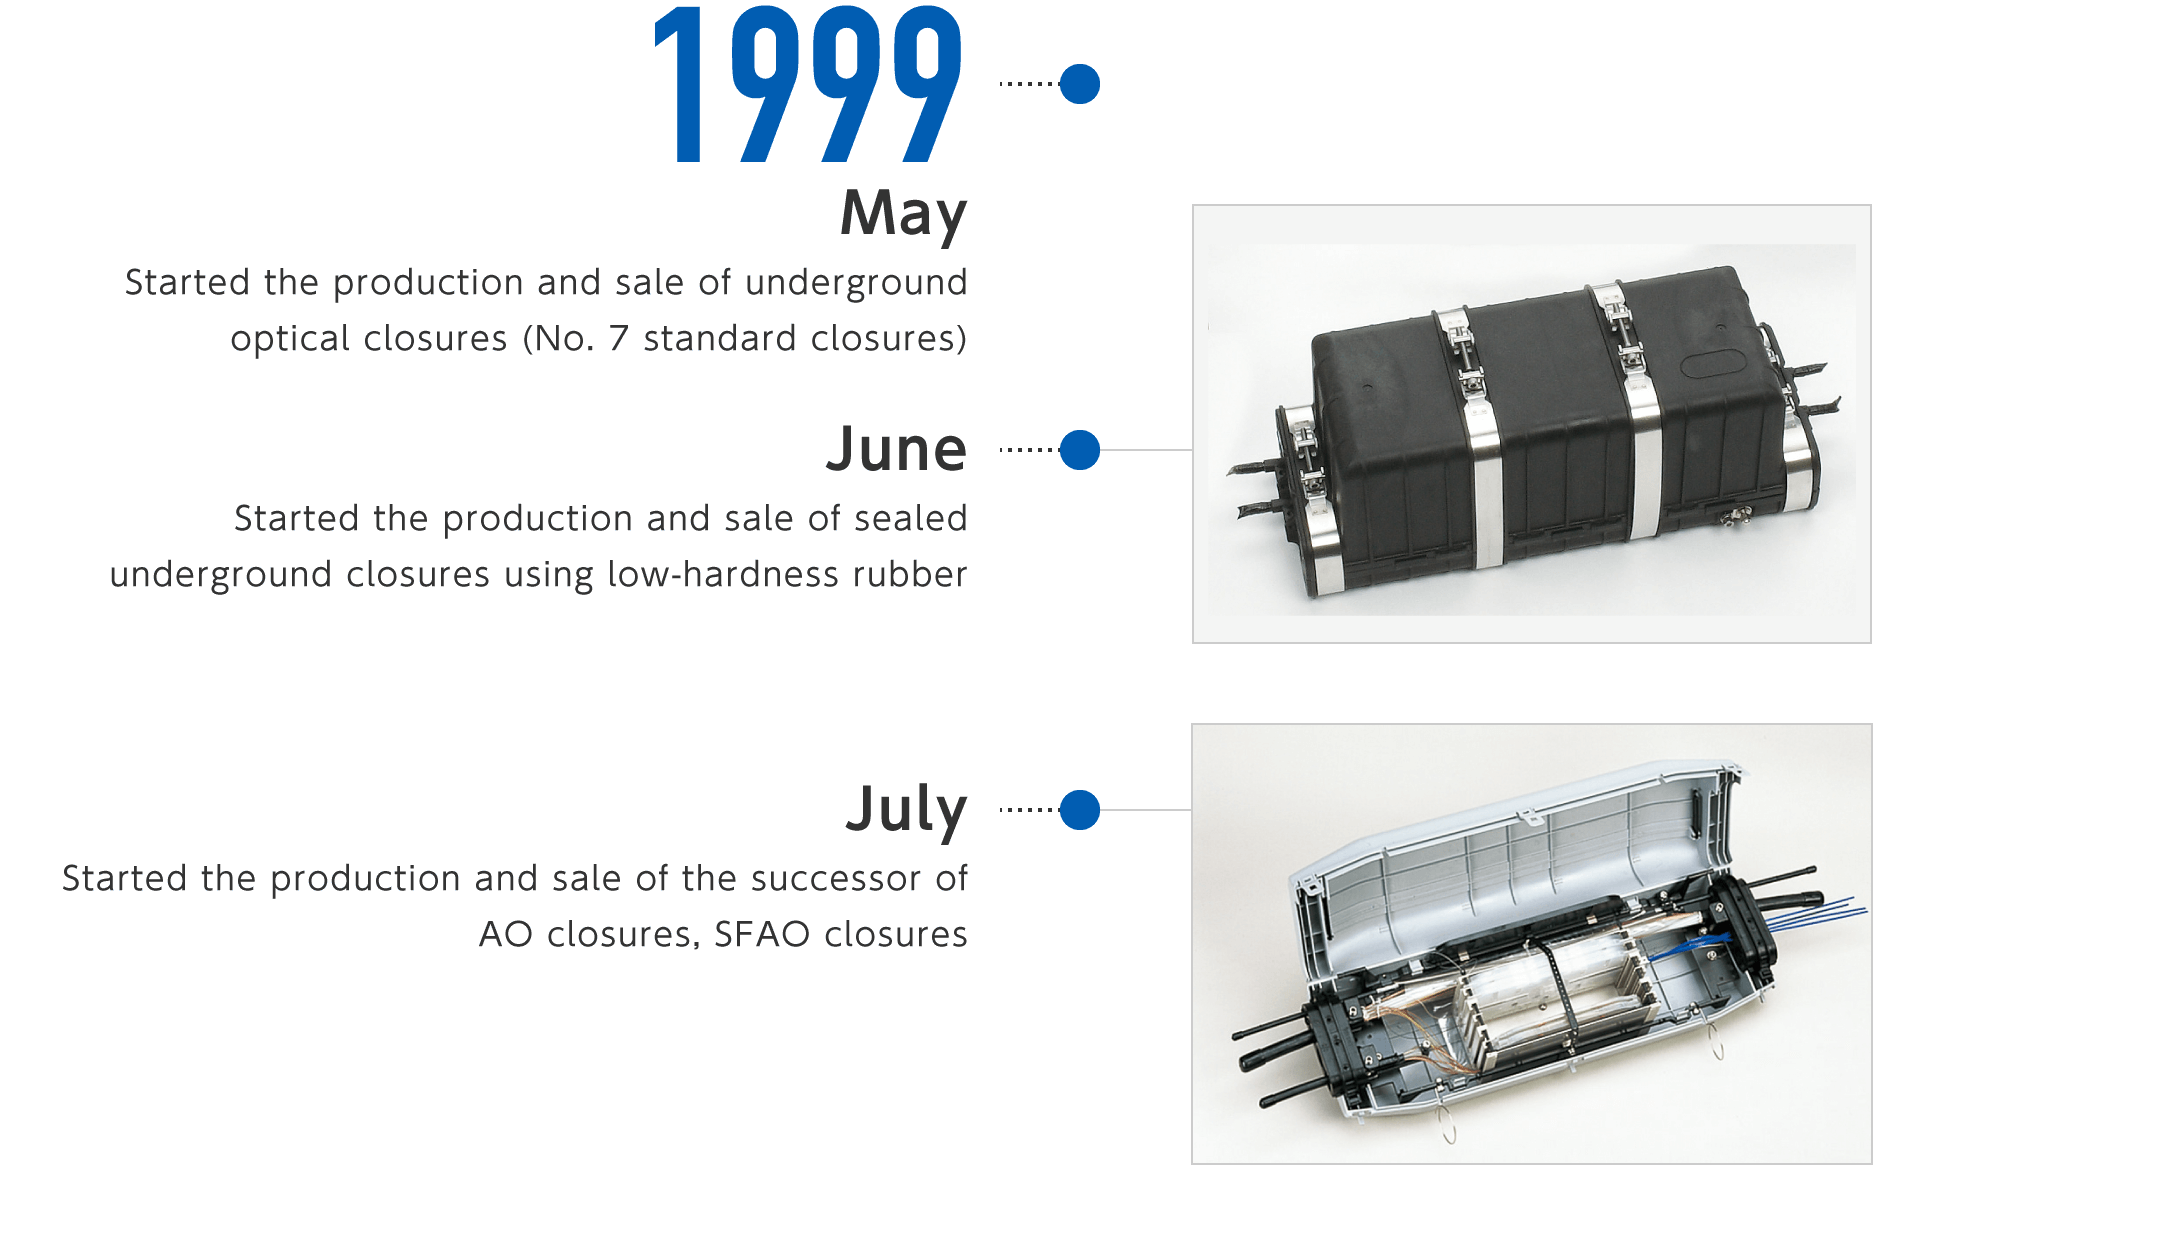 1999年5月-地下光用クロージャ（7号スタンダードクロージャ）の製造・販売を開始、6月-低硬度ゴムによる気密シール構造型地下用クロージャの製造・販売を開始、7月-AOクロージャの後継機種であるSFAOクロージャの製造・販売を開始